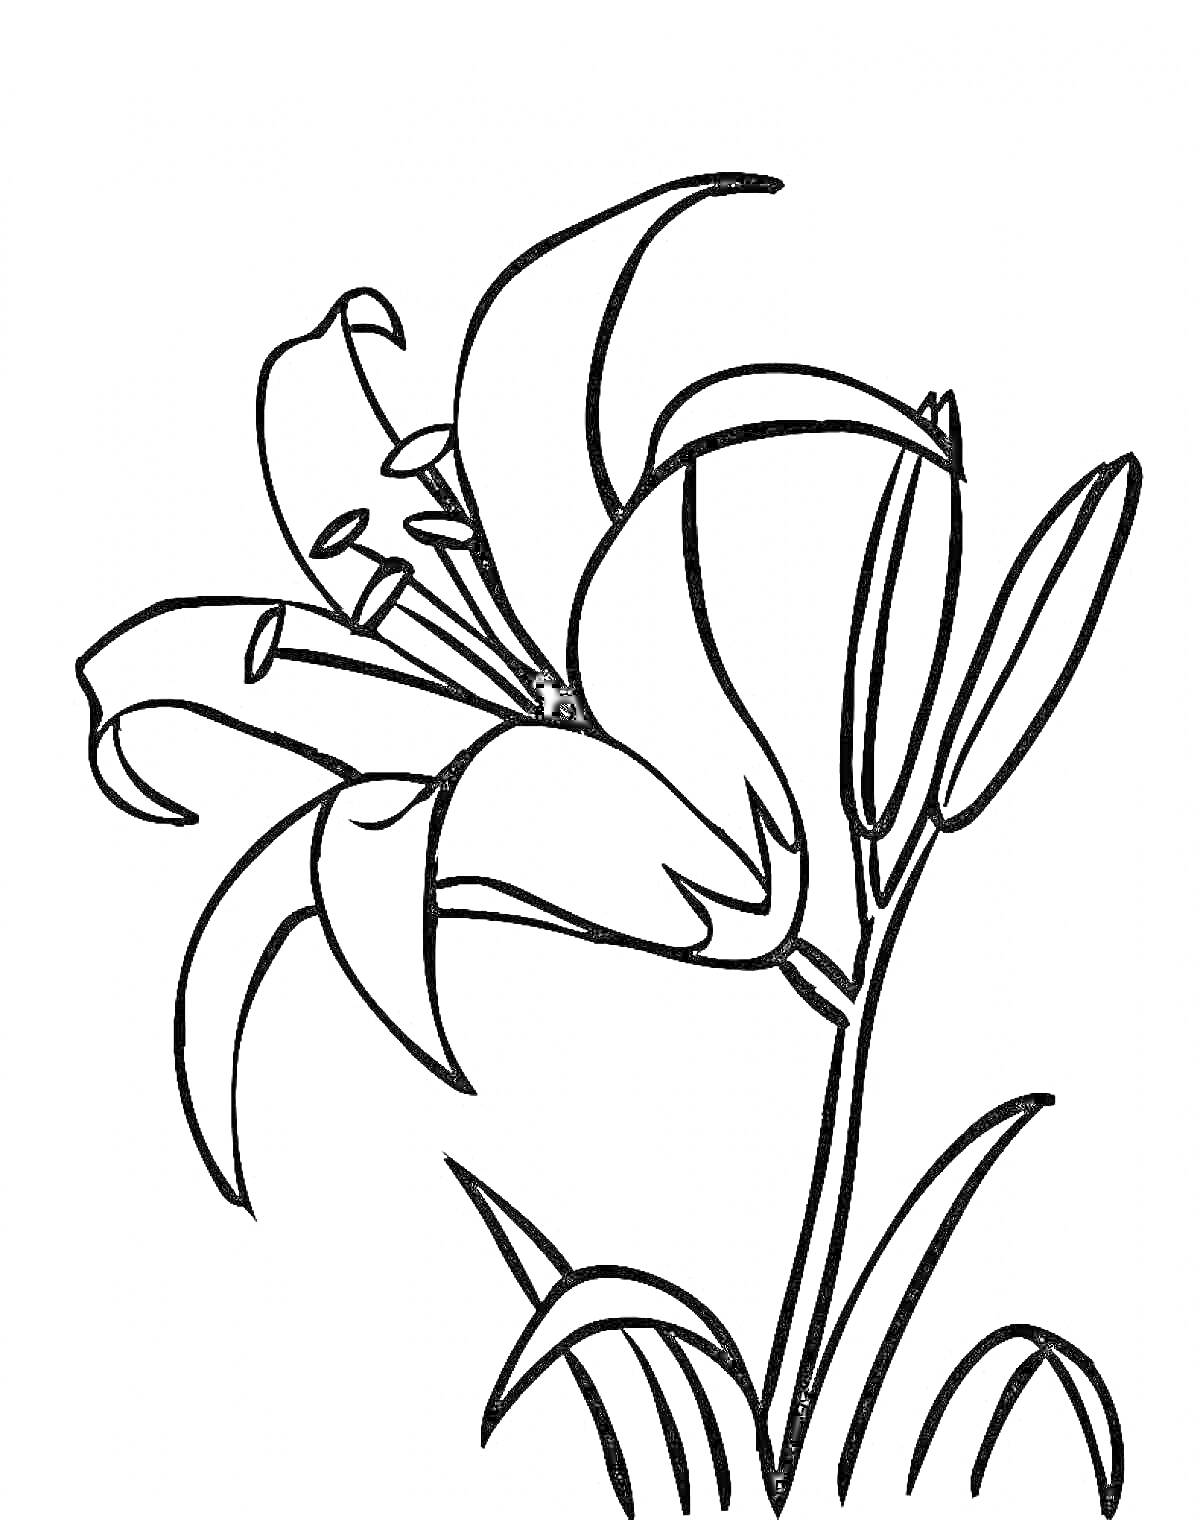 Раскраска Рисунок лилии с цветами, бутонами и листьями